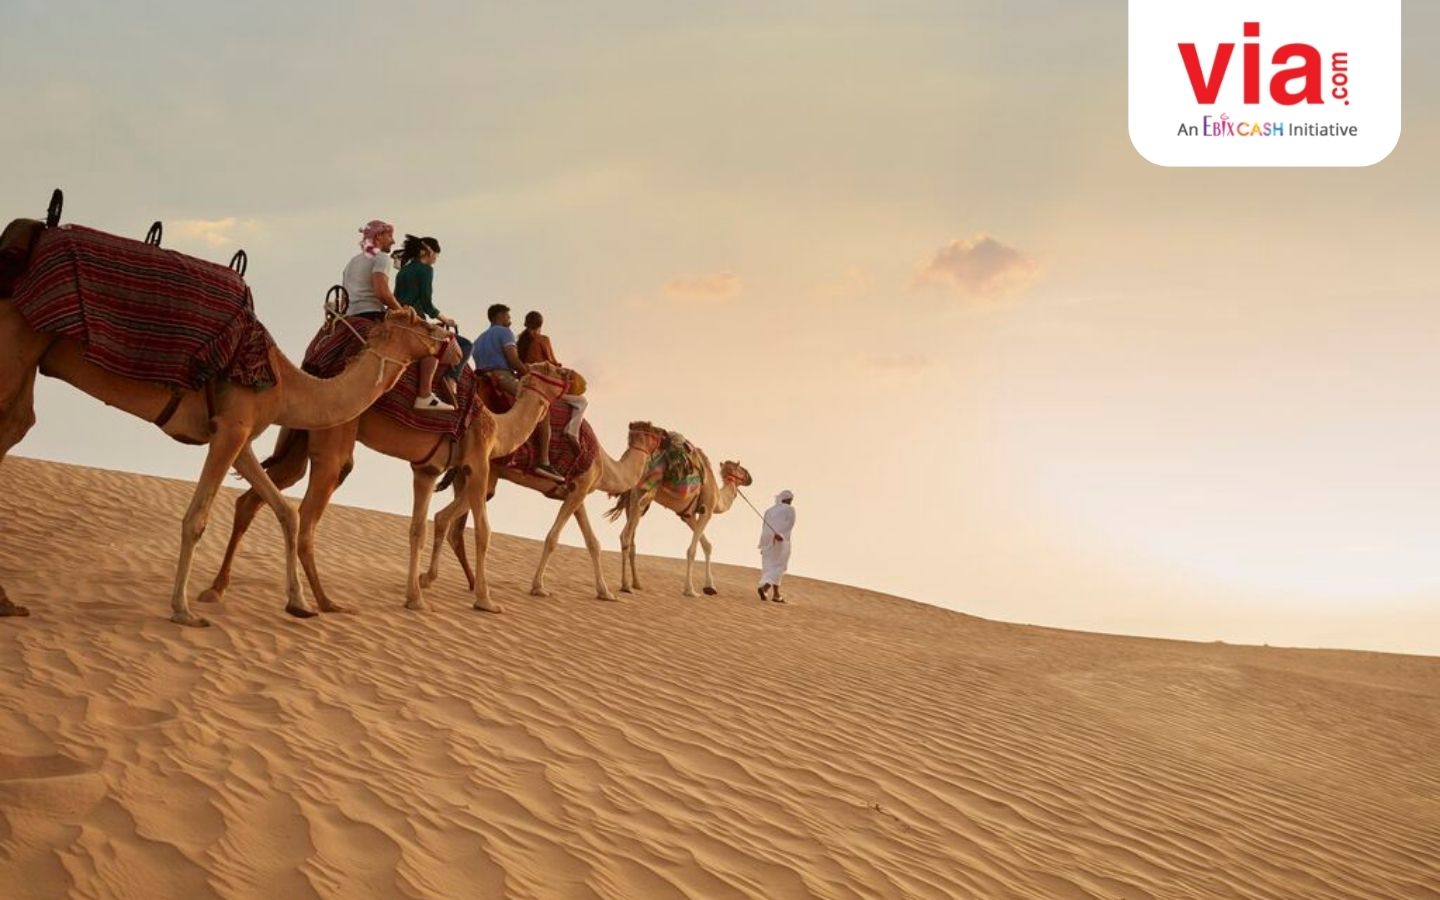 Ajak Tamu Anda Rasakan Keseruan di Dubai Desert dengan 5 Aktivitas Ini